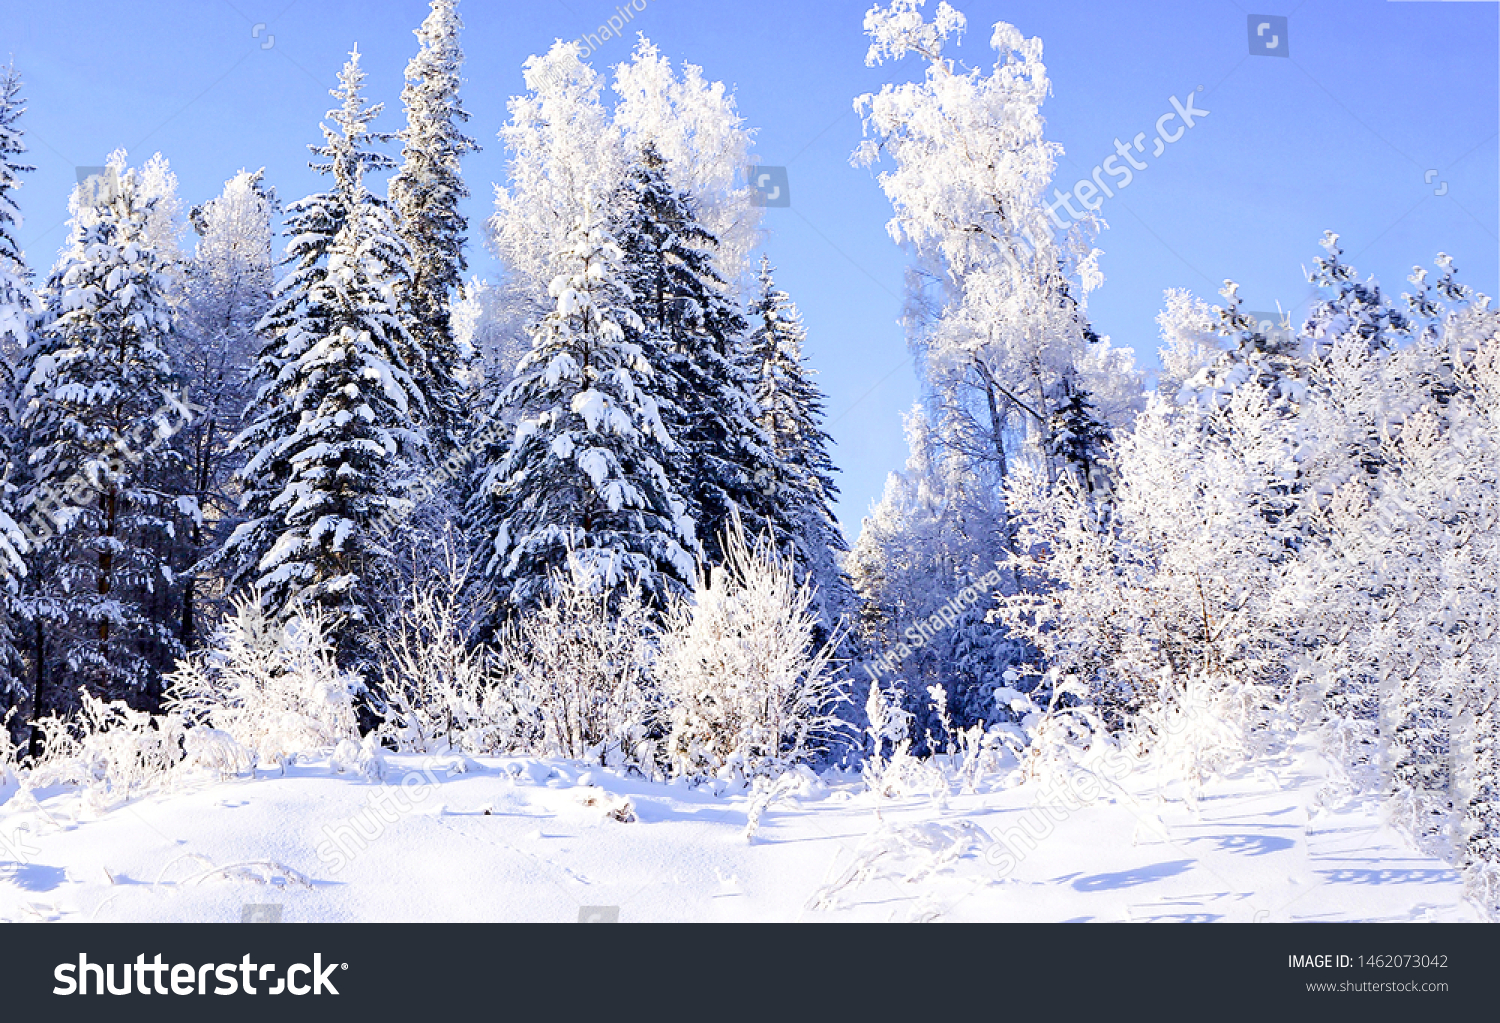 冬の雪林の木の背景 雪の多い冬の森の風景 冬の雪林の景色 冬林雪景色 の写真素材 今すぐ編集